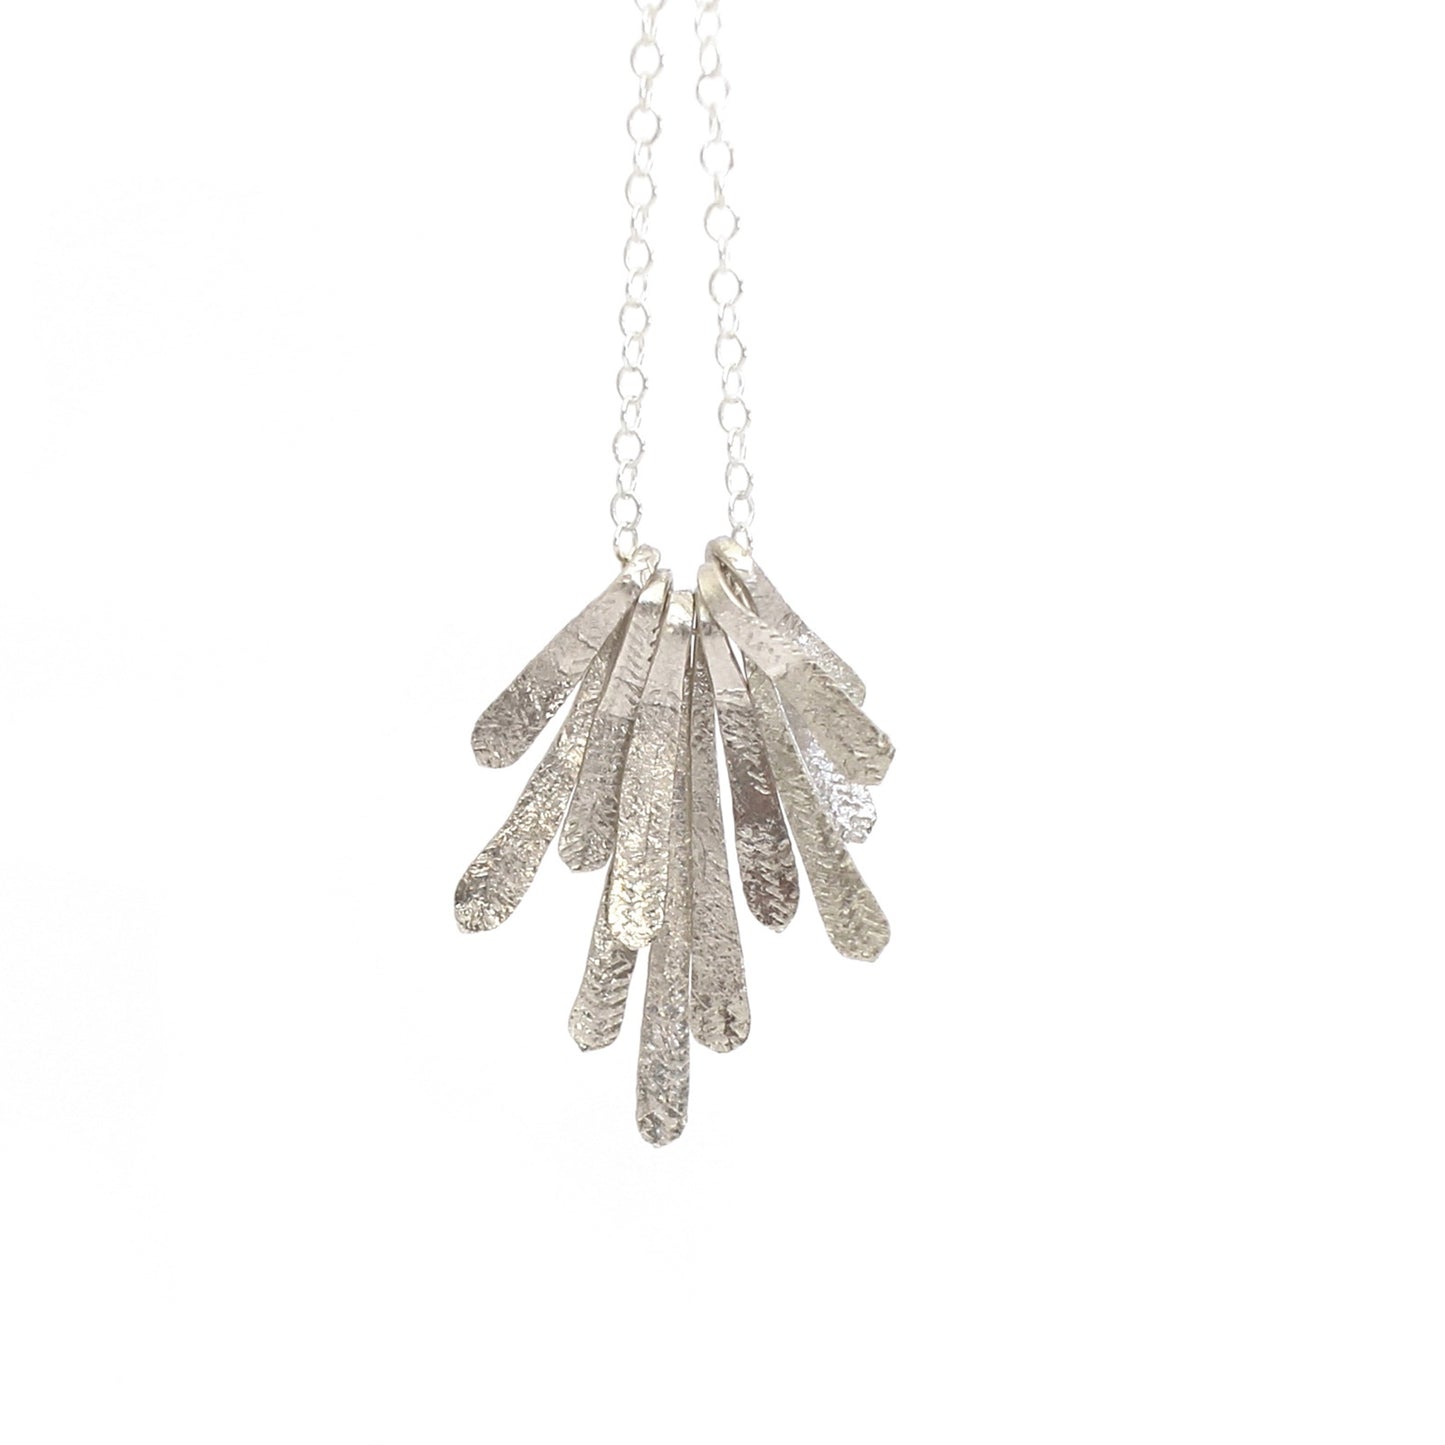 Flutter Necklace - Silver